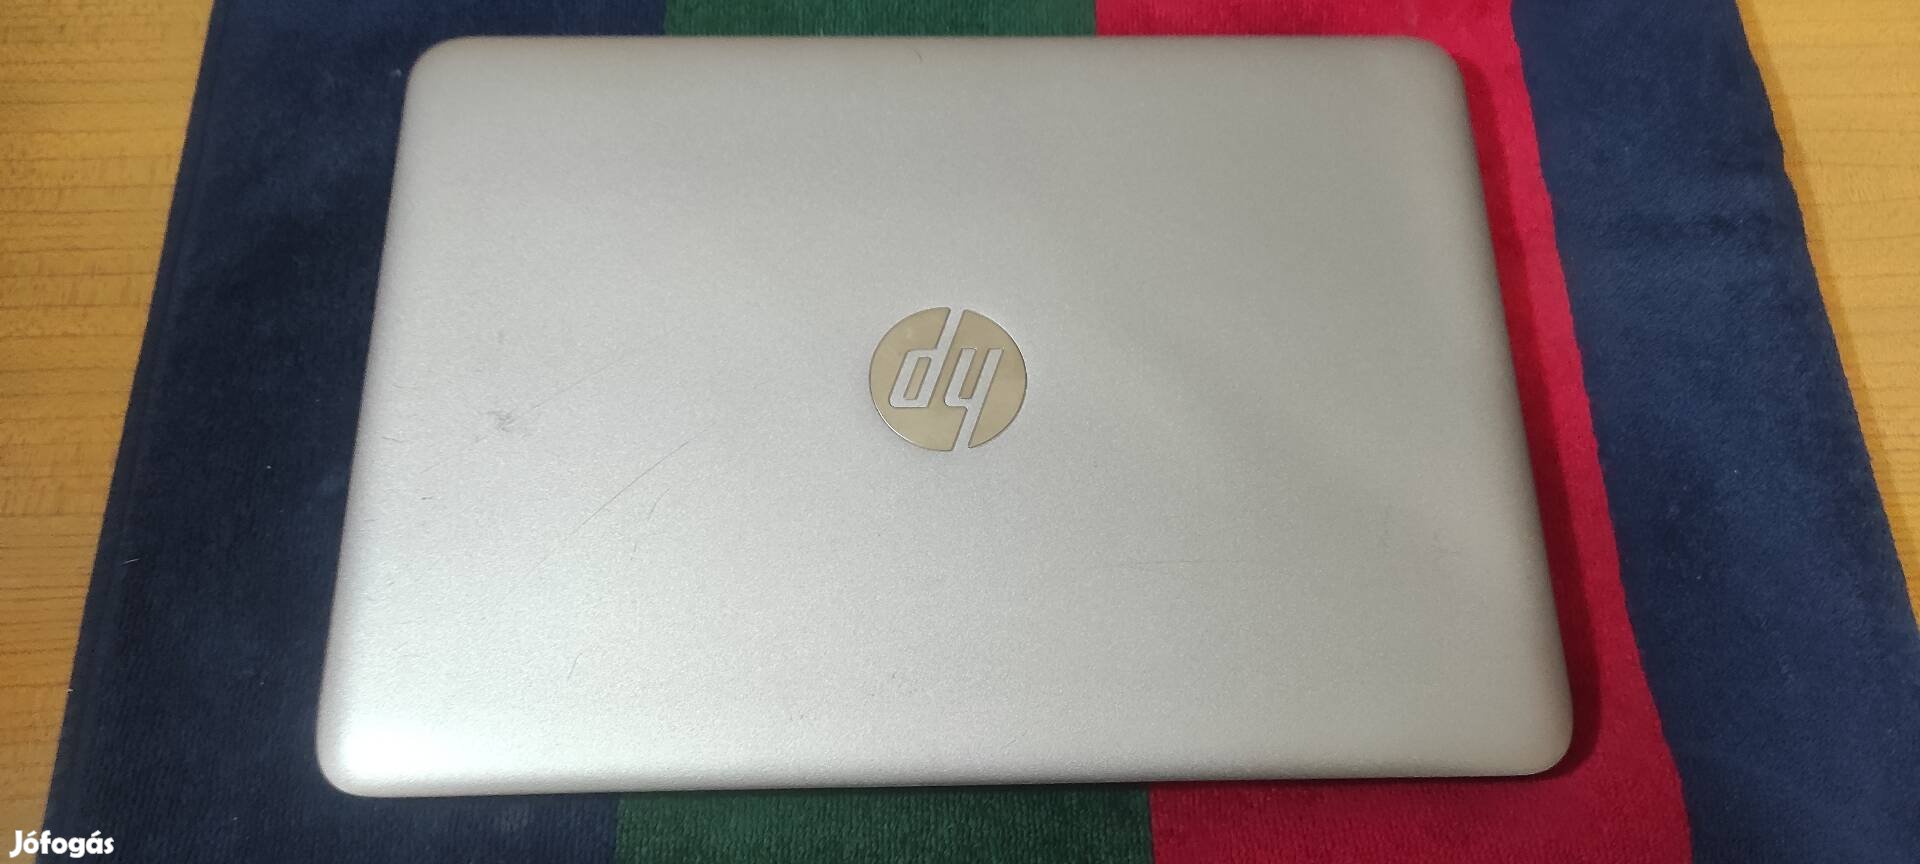 HP 820 G3 Elitebook 